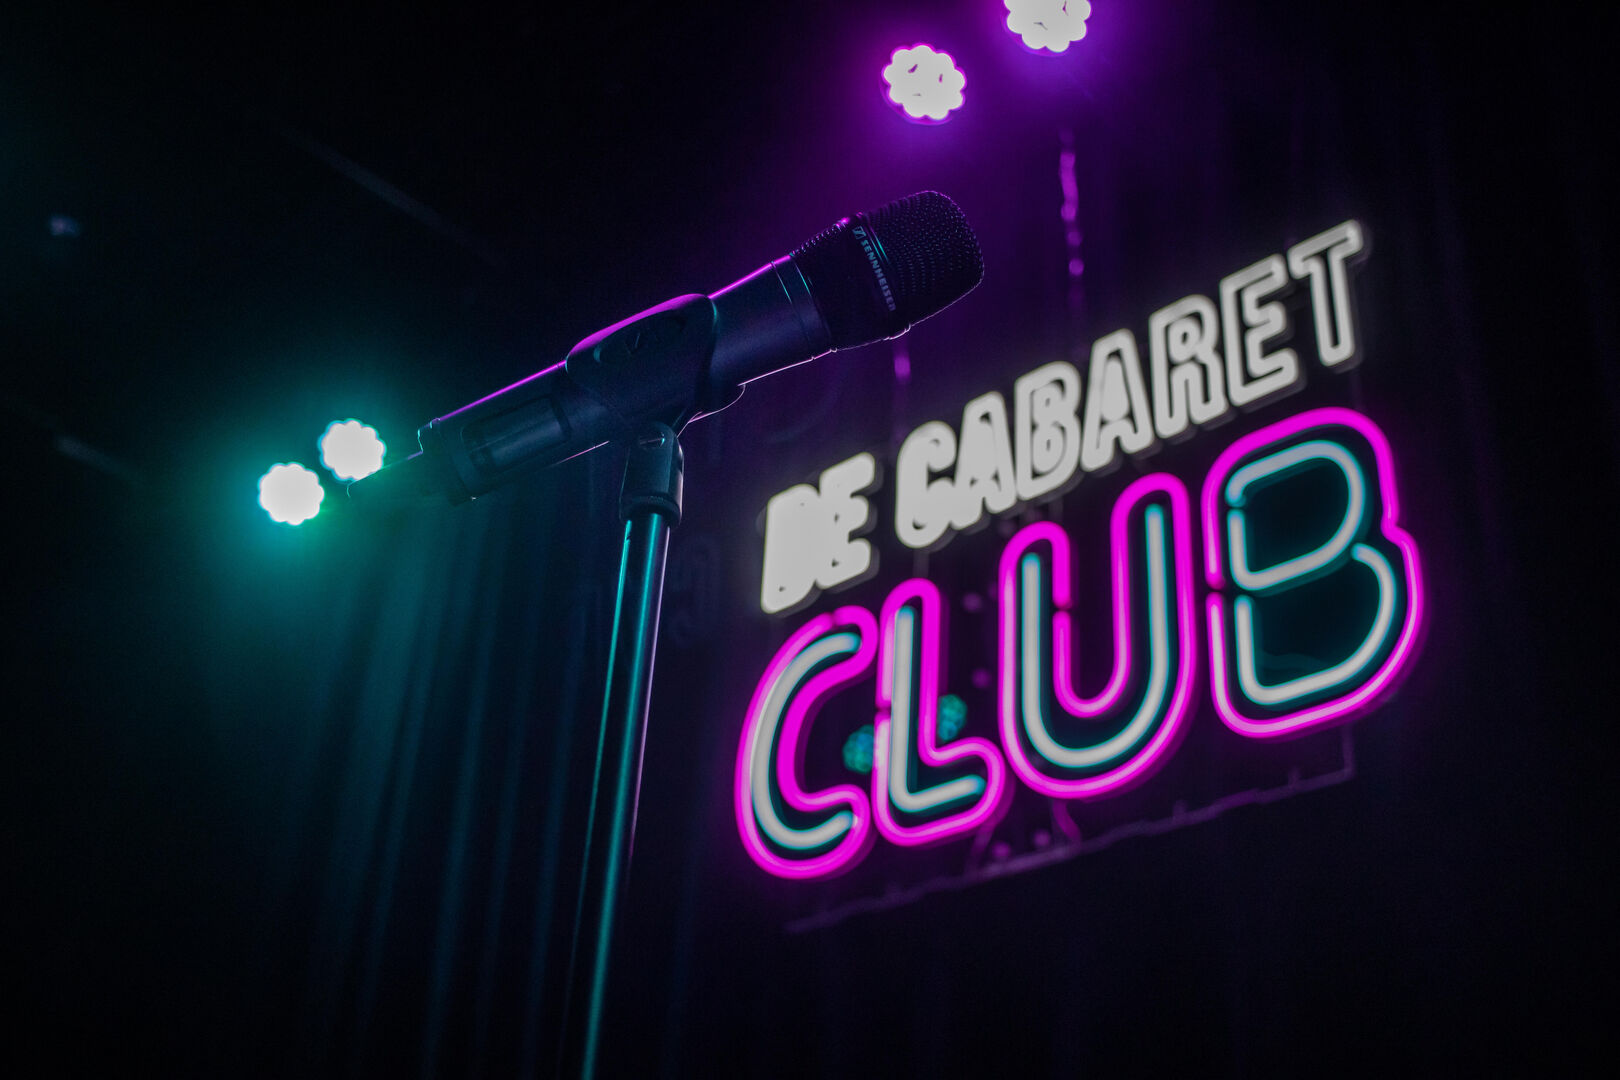 De Cabaret Club